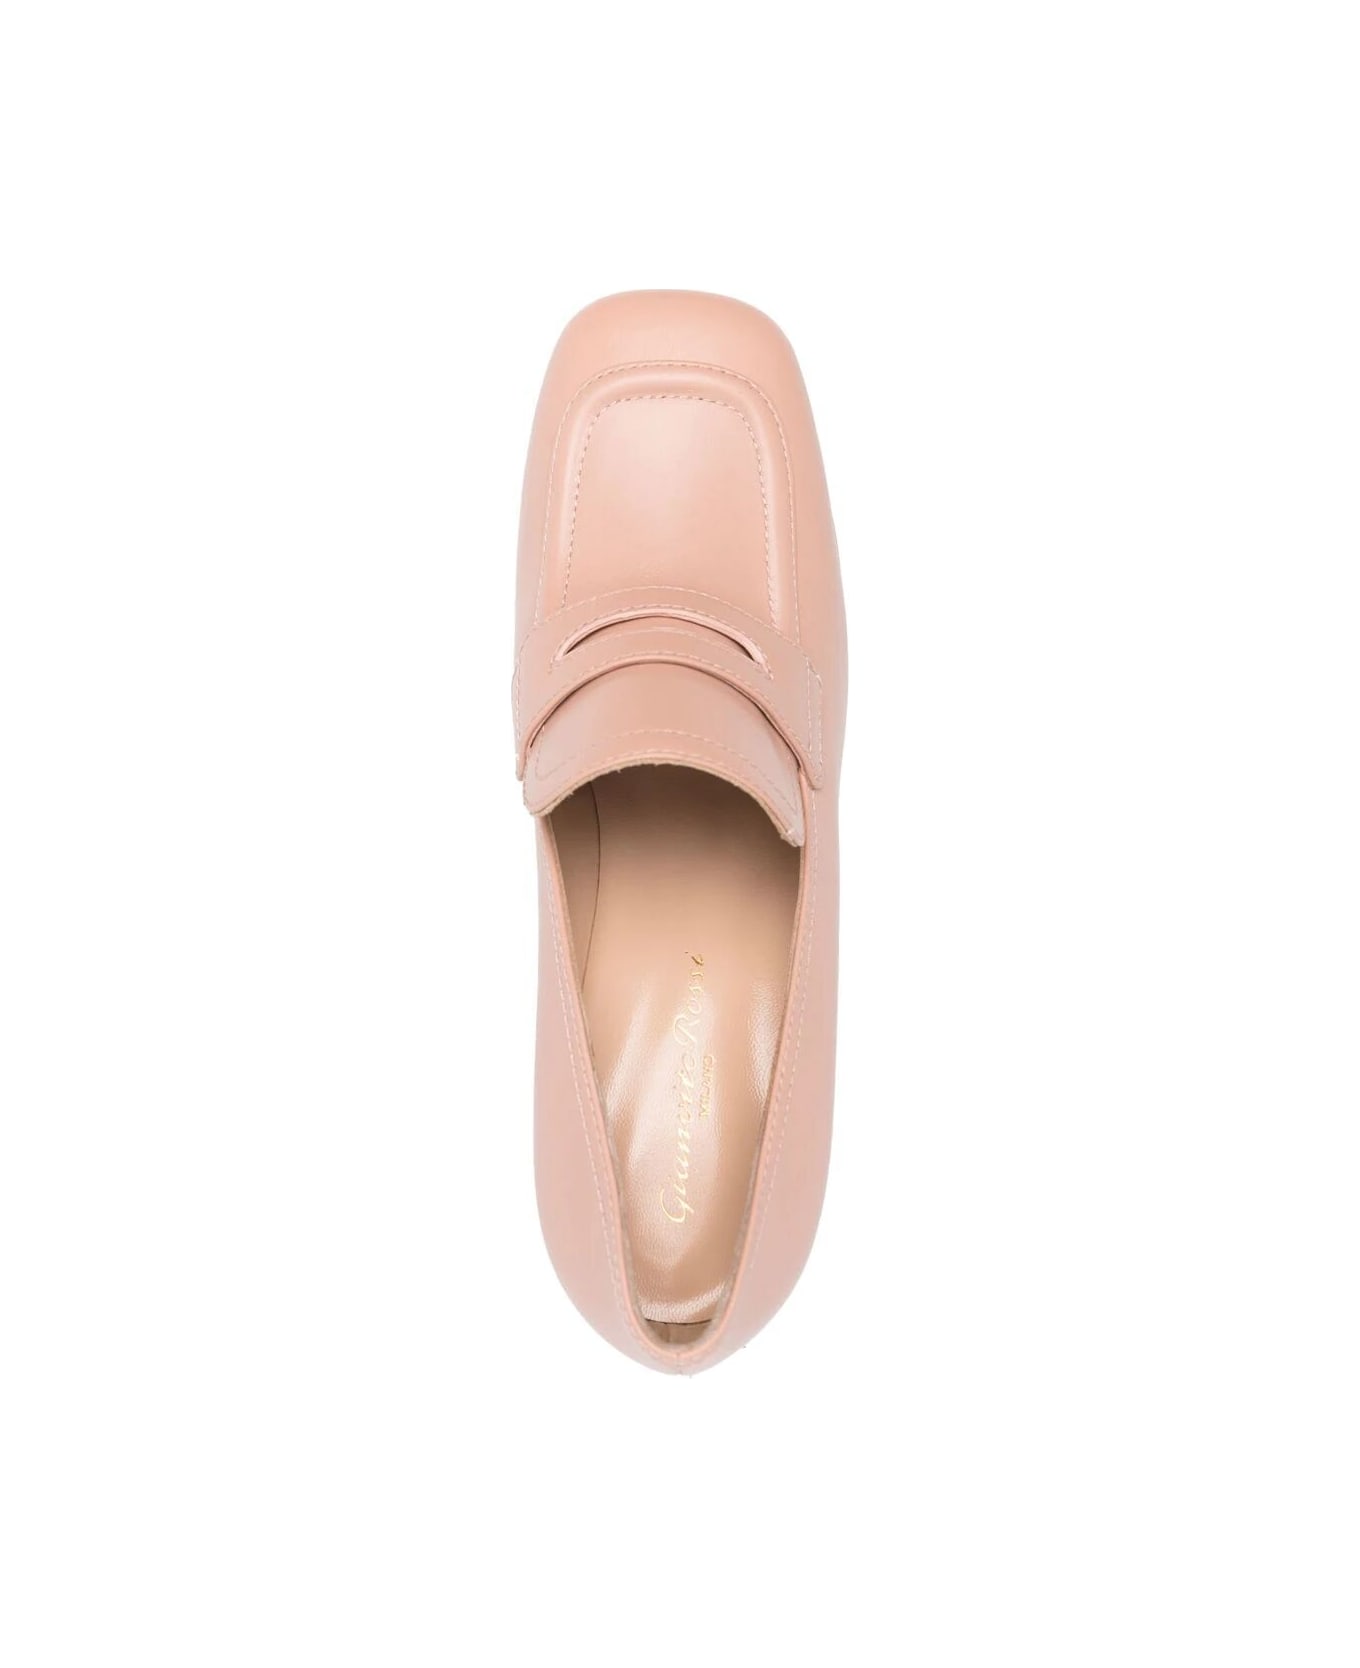 Gianvito Rossi Rouen Calf Glove Shoes - Peach ハイヒール